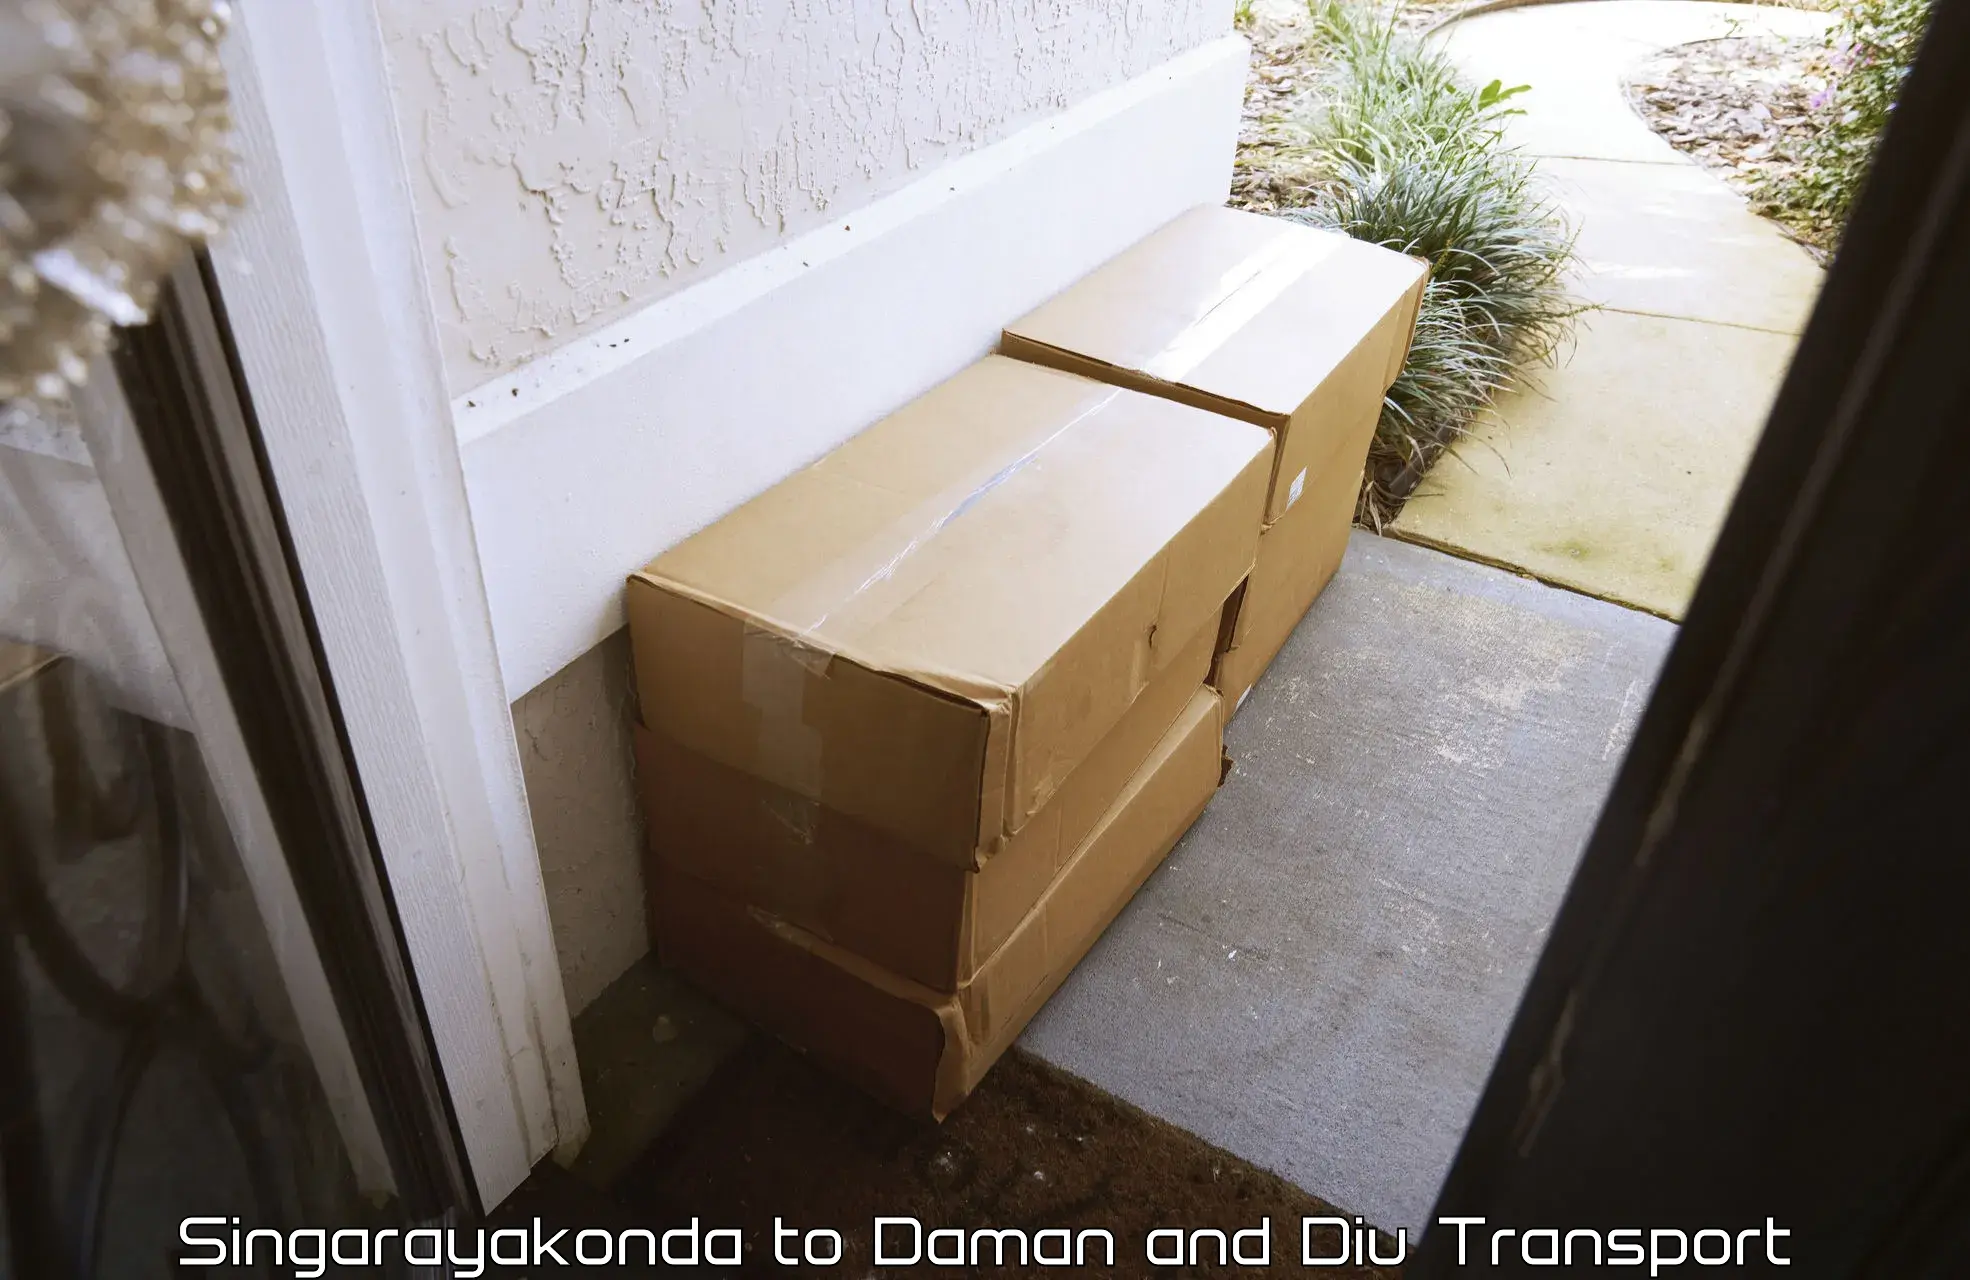 Cargo transport services Singarayakonda to Daman